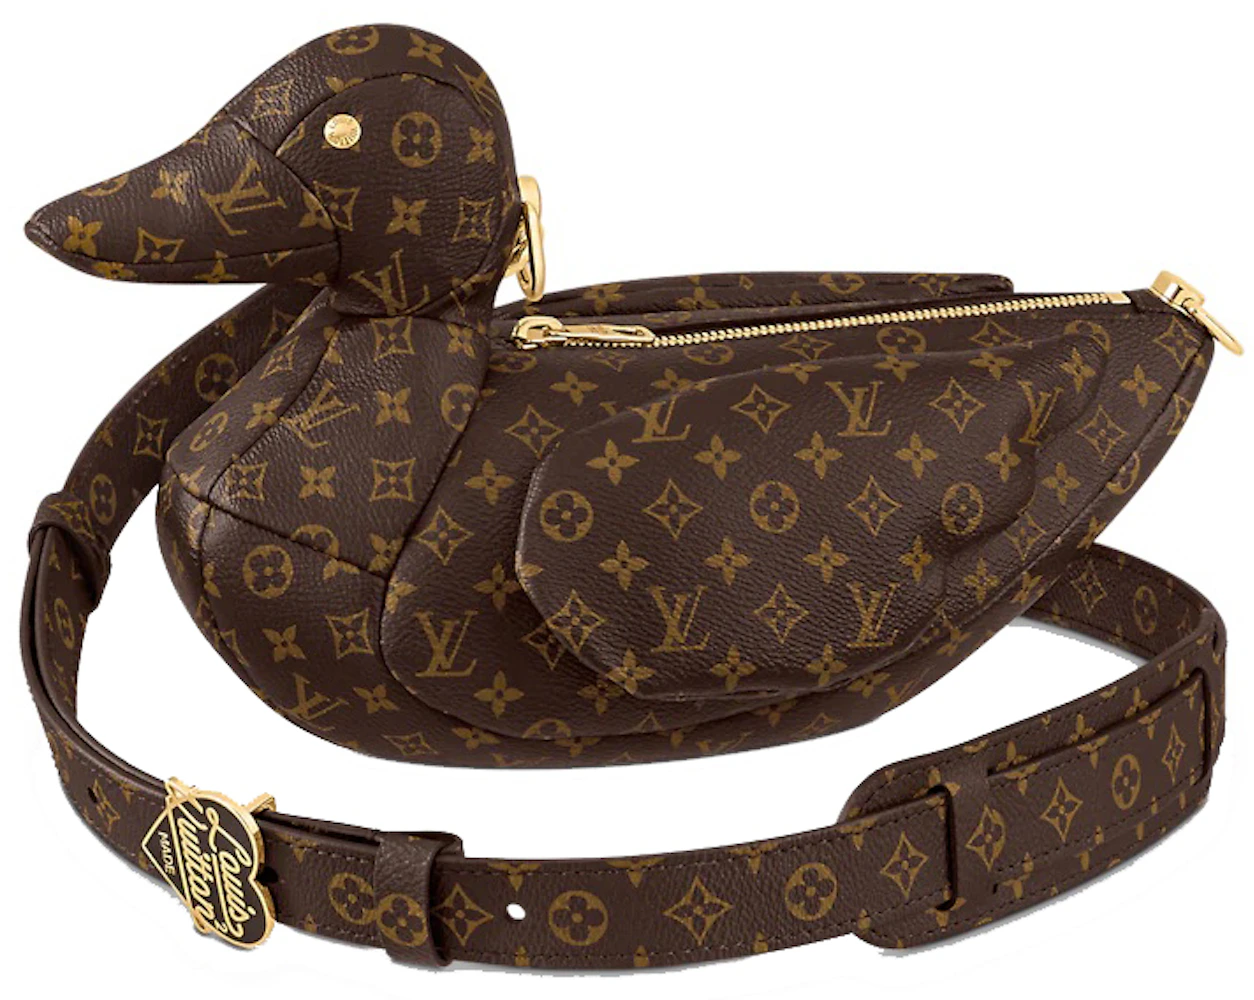 The bag Louis Vuitton